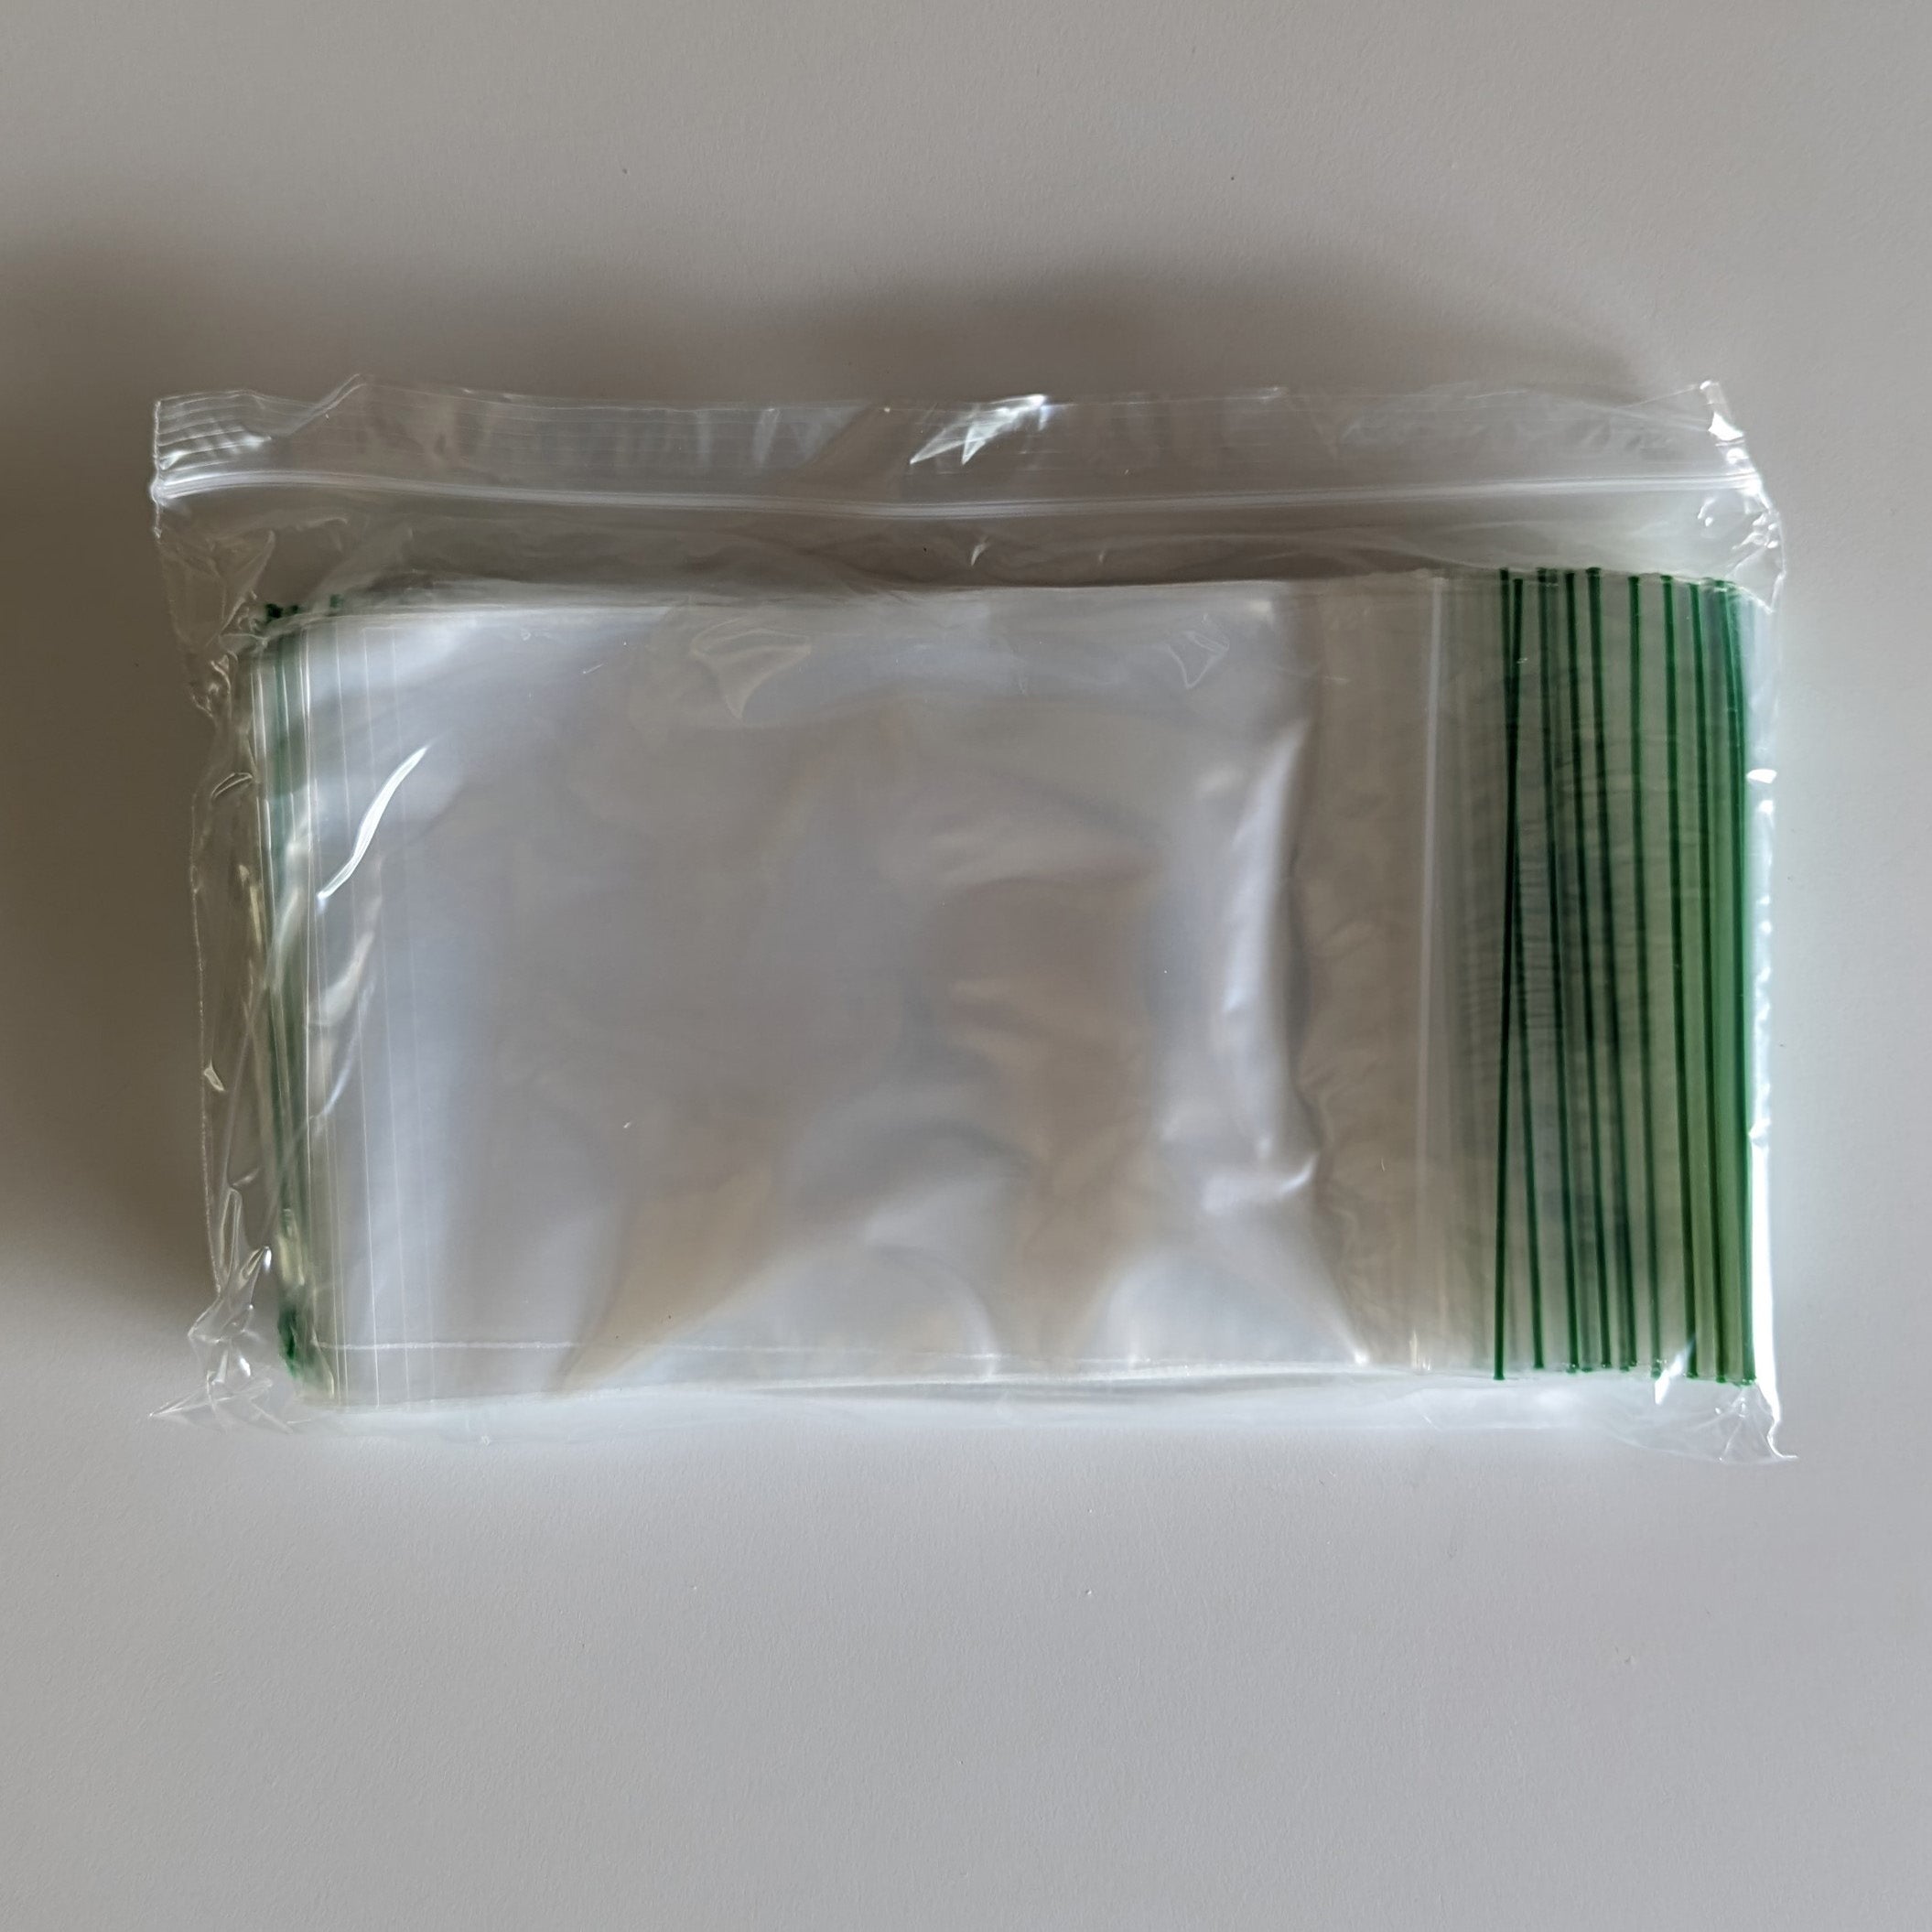 Ziplock Bags (pint, quart, gallon)